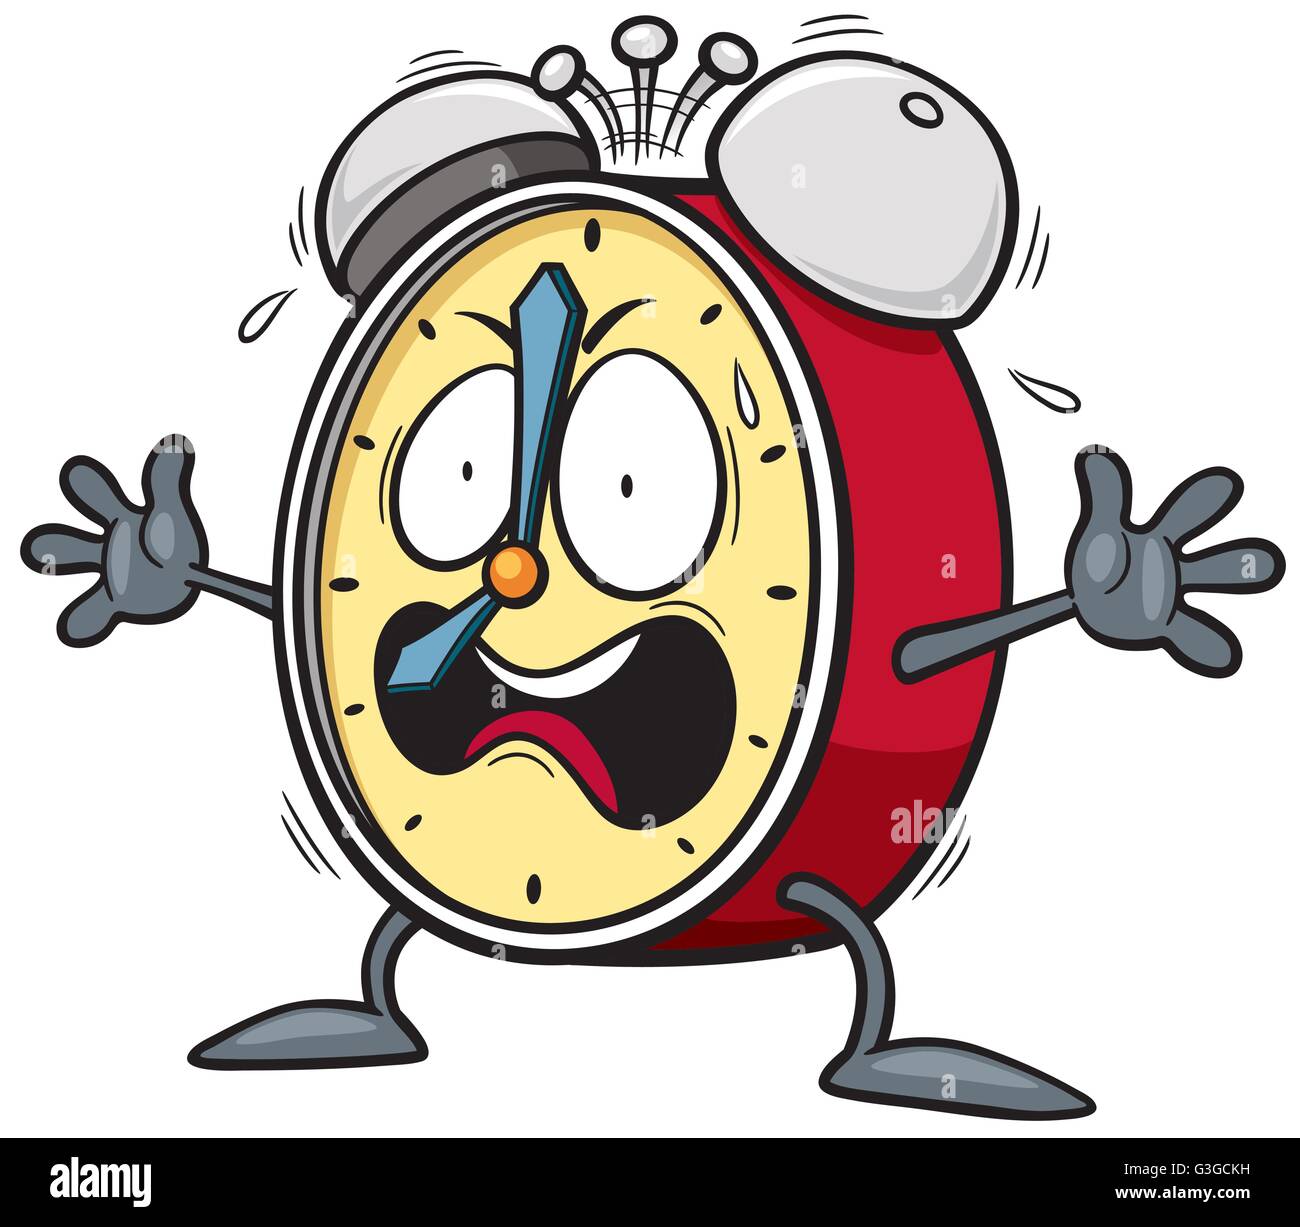 Ilustración Vectorial De Dibujos Animados Reloj Alarma Imagen Vector De Stock Alamy